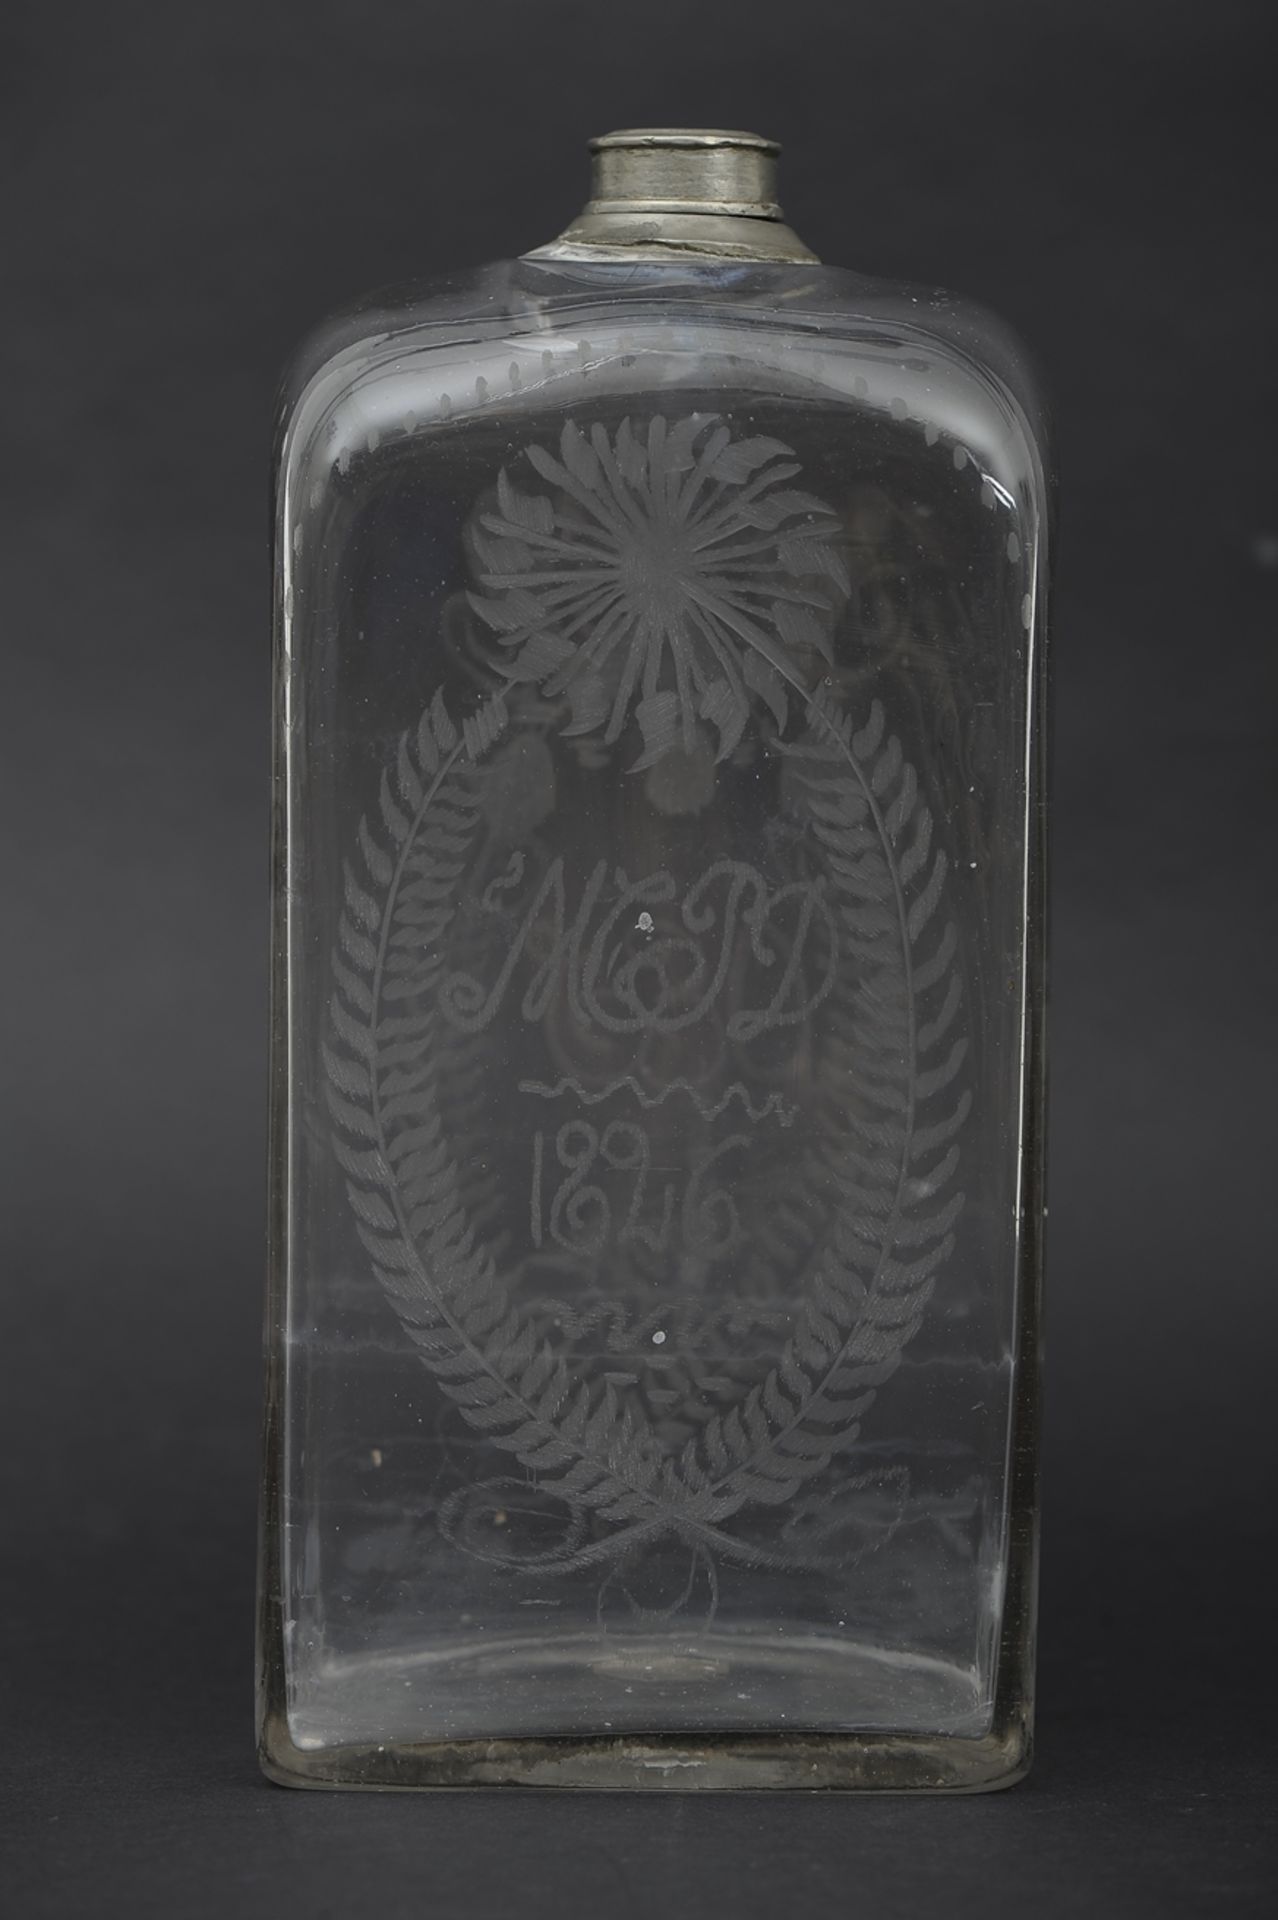 Antike Branntweinflasche, "1826" datiert, farbloses Klarglas mit allseitigen Ätzdekoren, mundgeblas